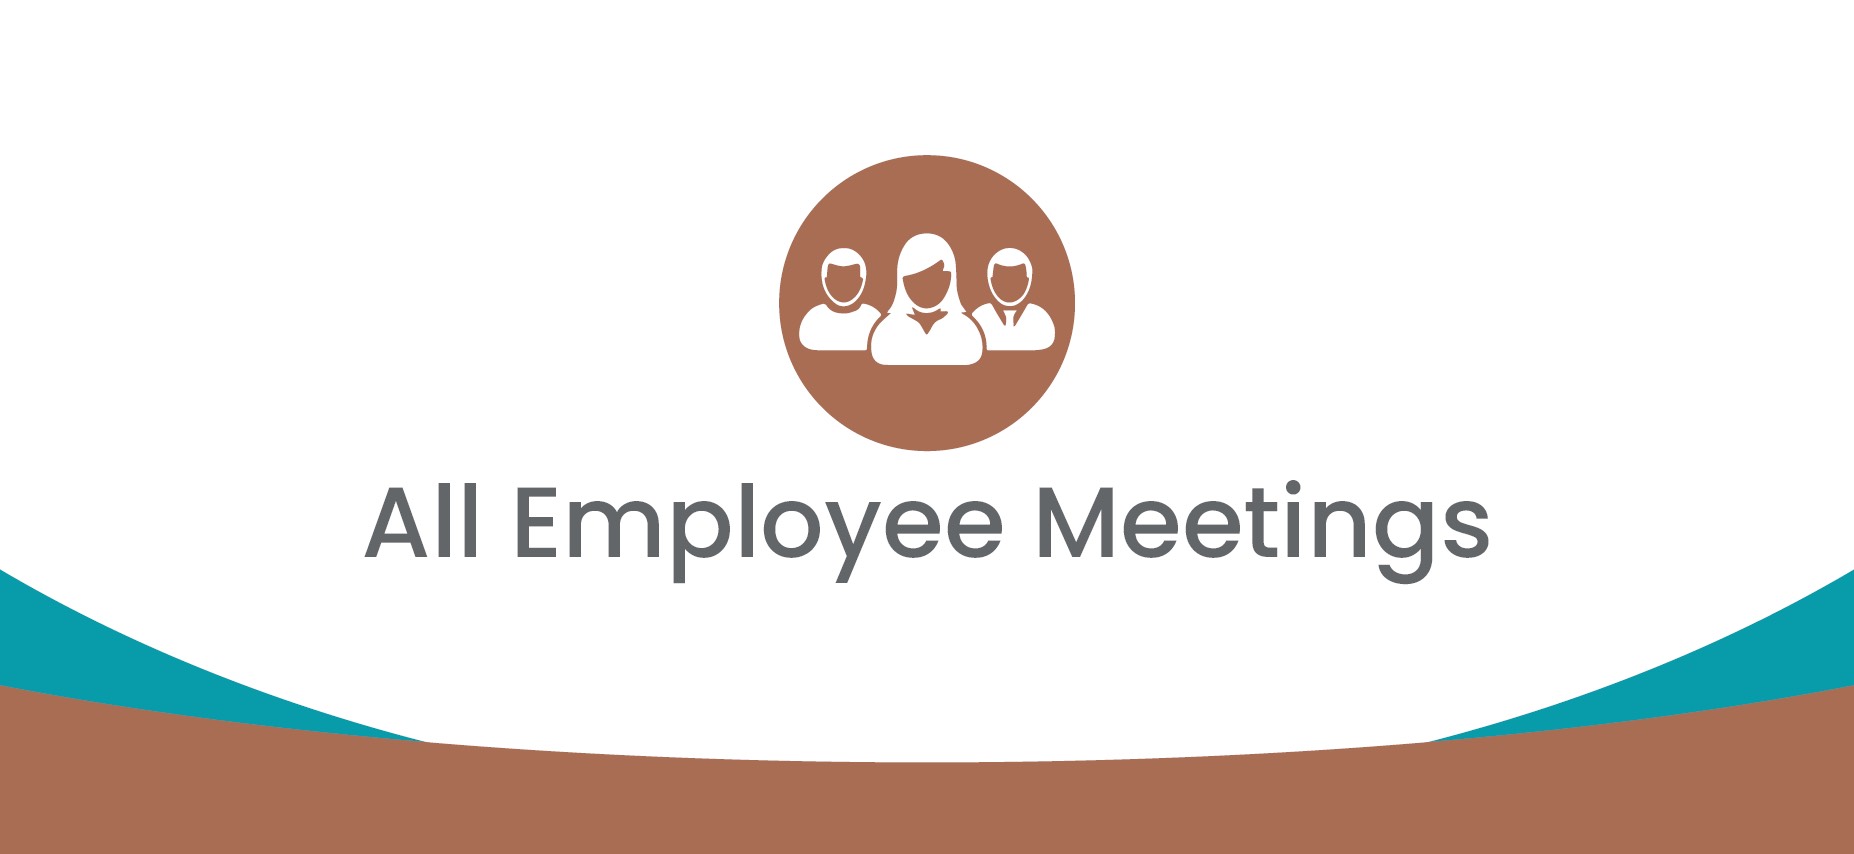 All Employee Meetings